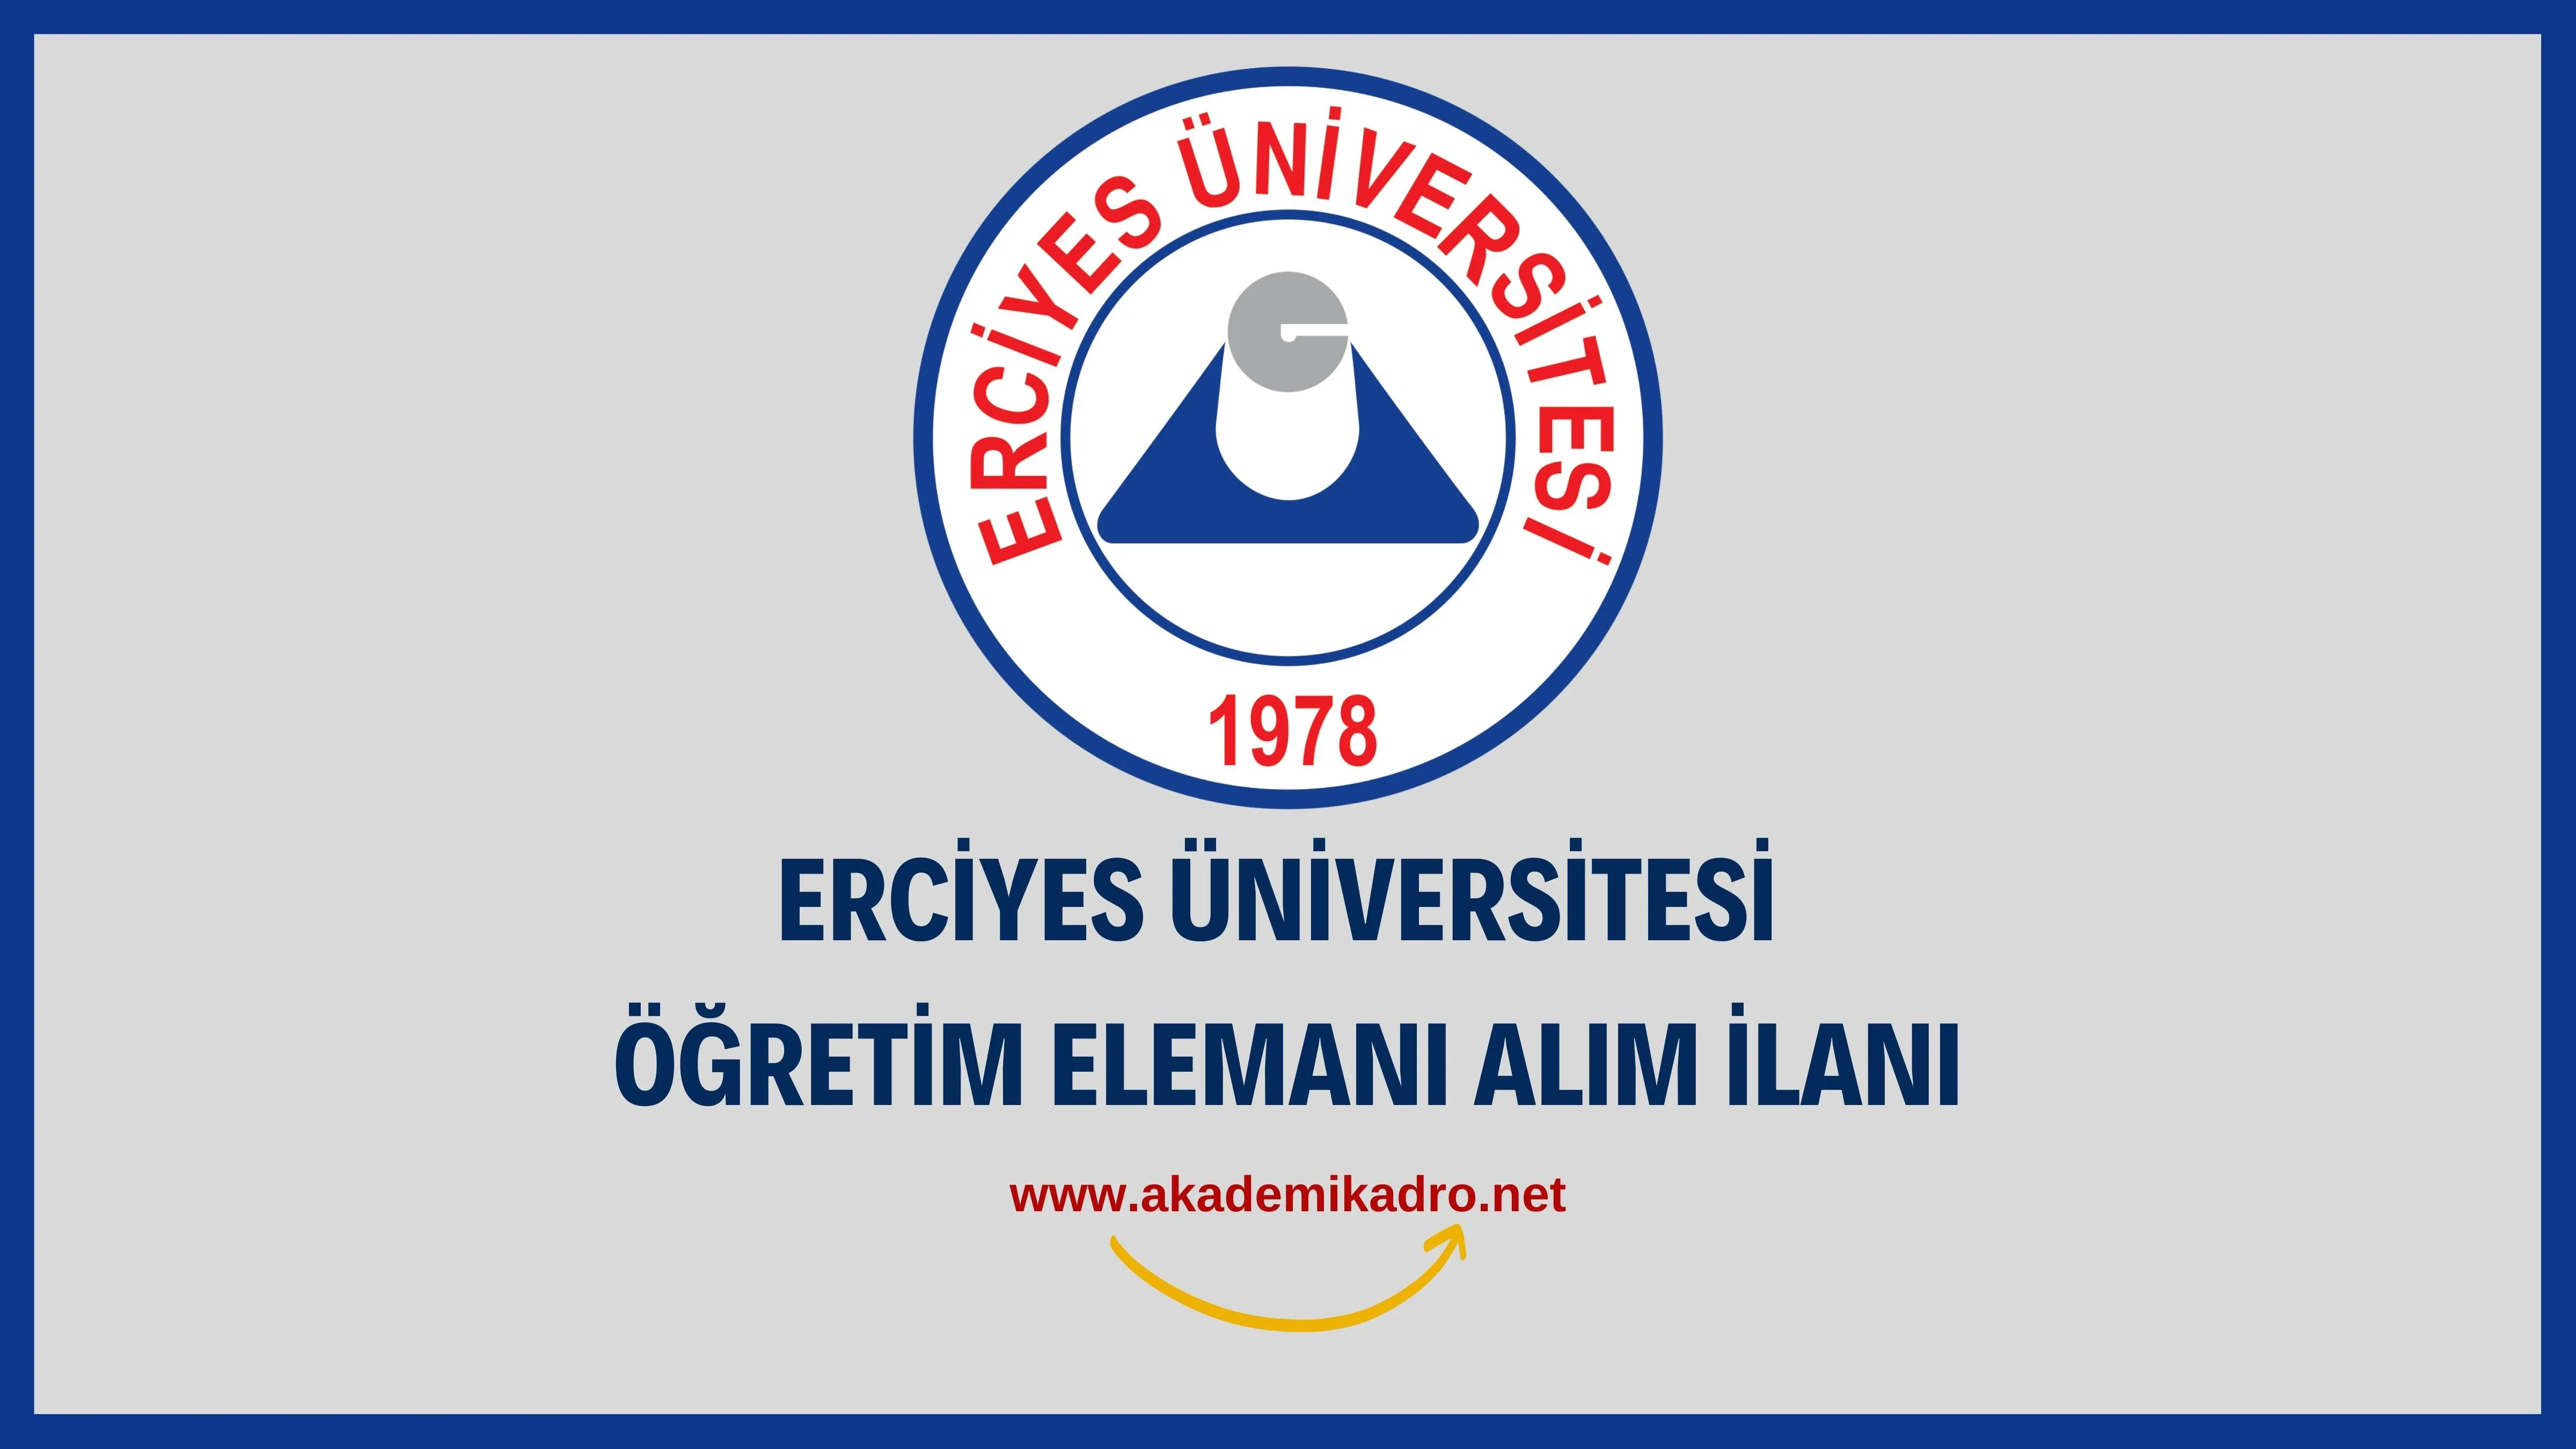 Erciyes Üniversitesi49 Araştırma görevlisi ve 2 öğretim görevlisi alacak.